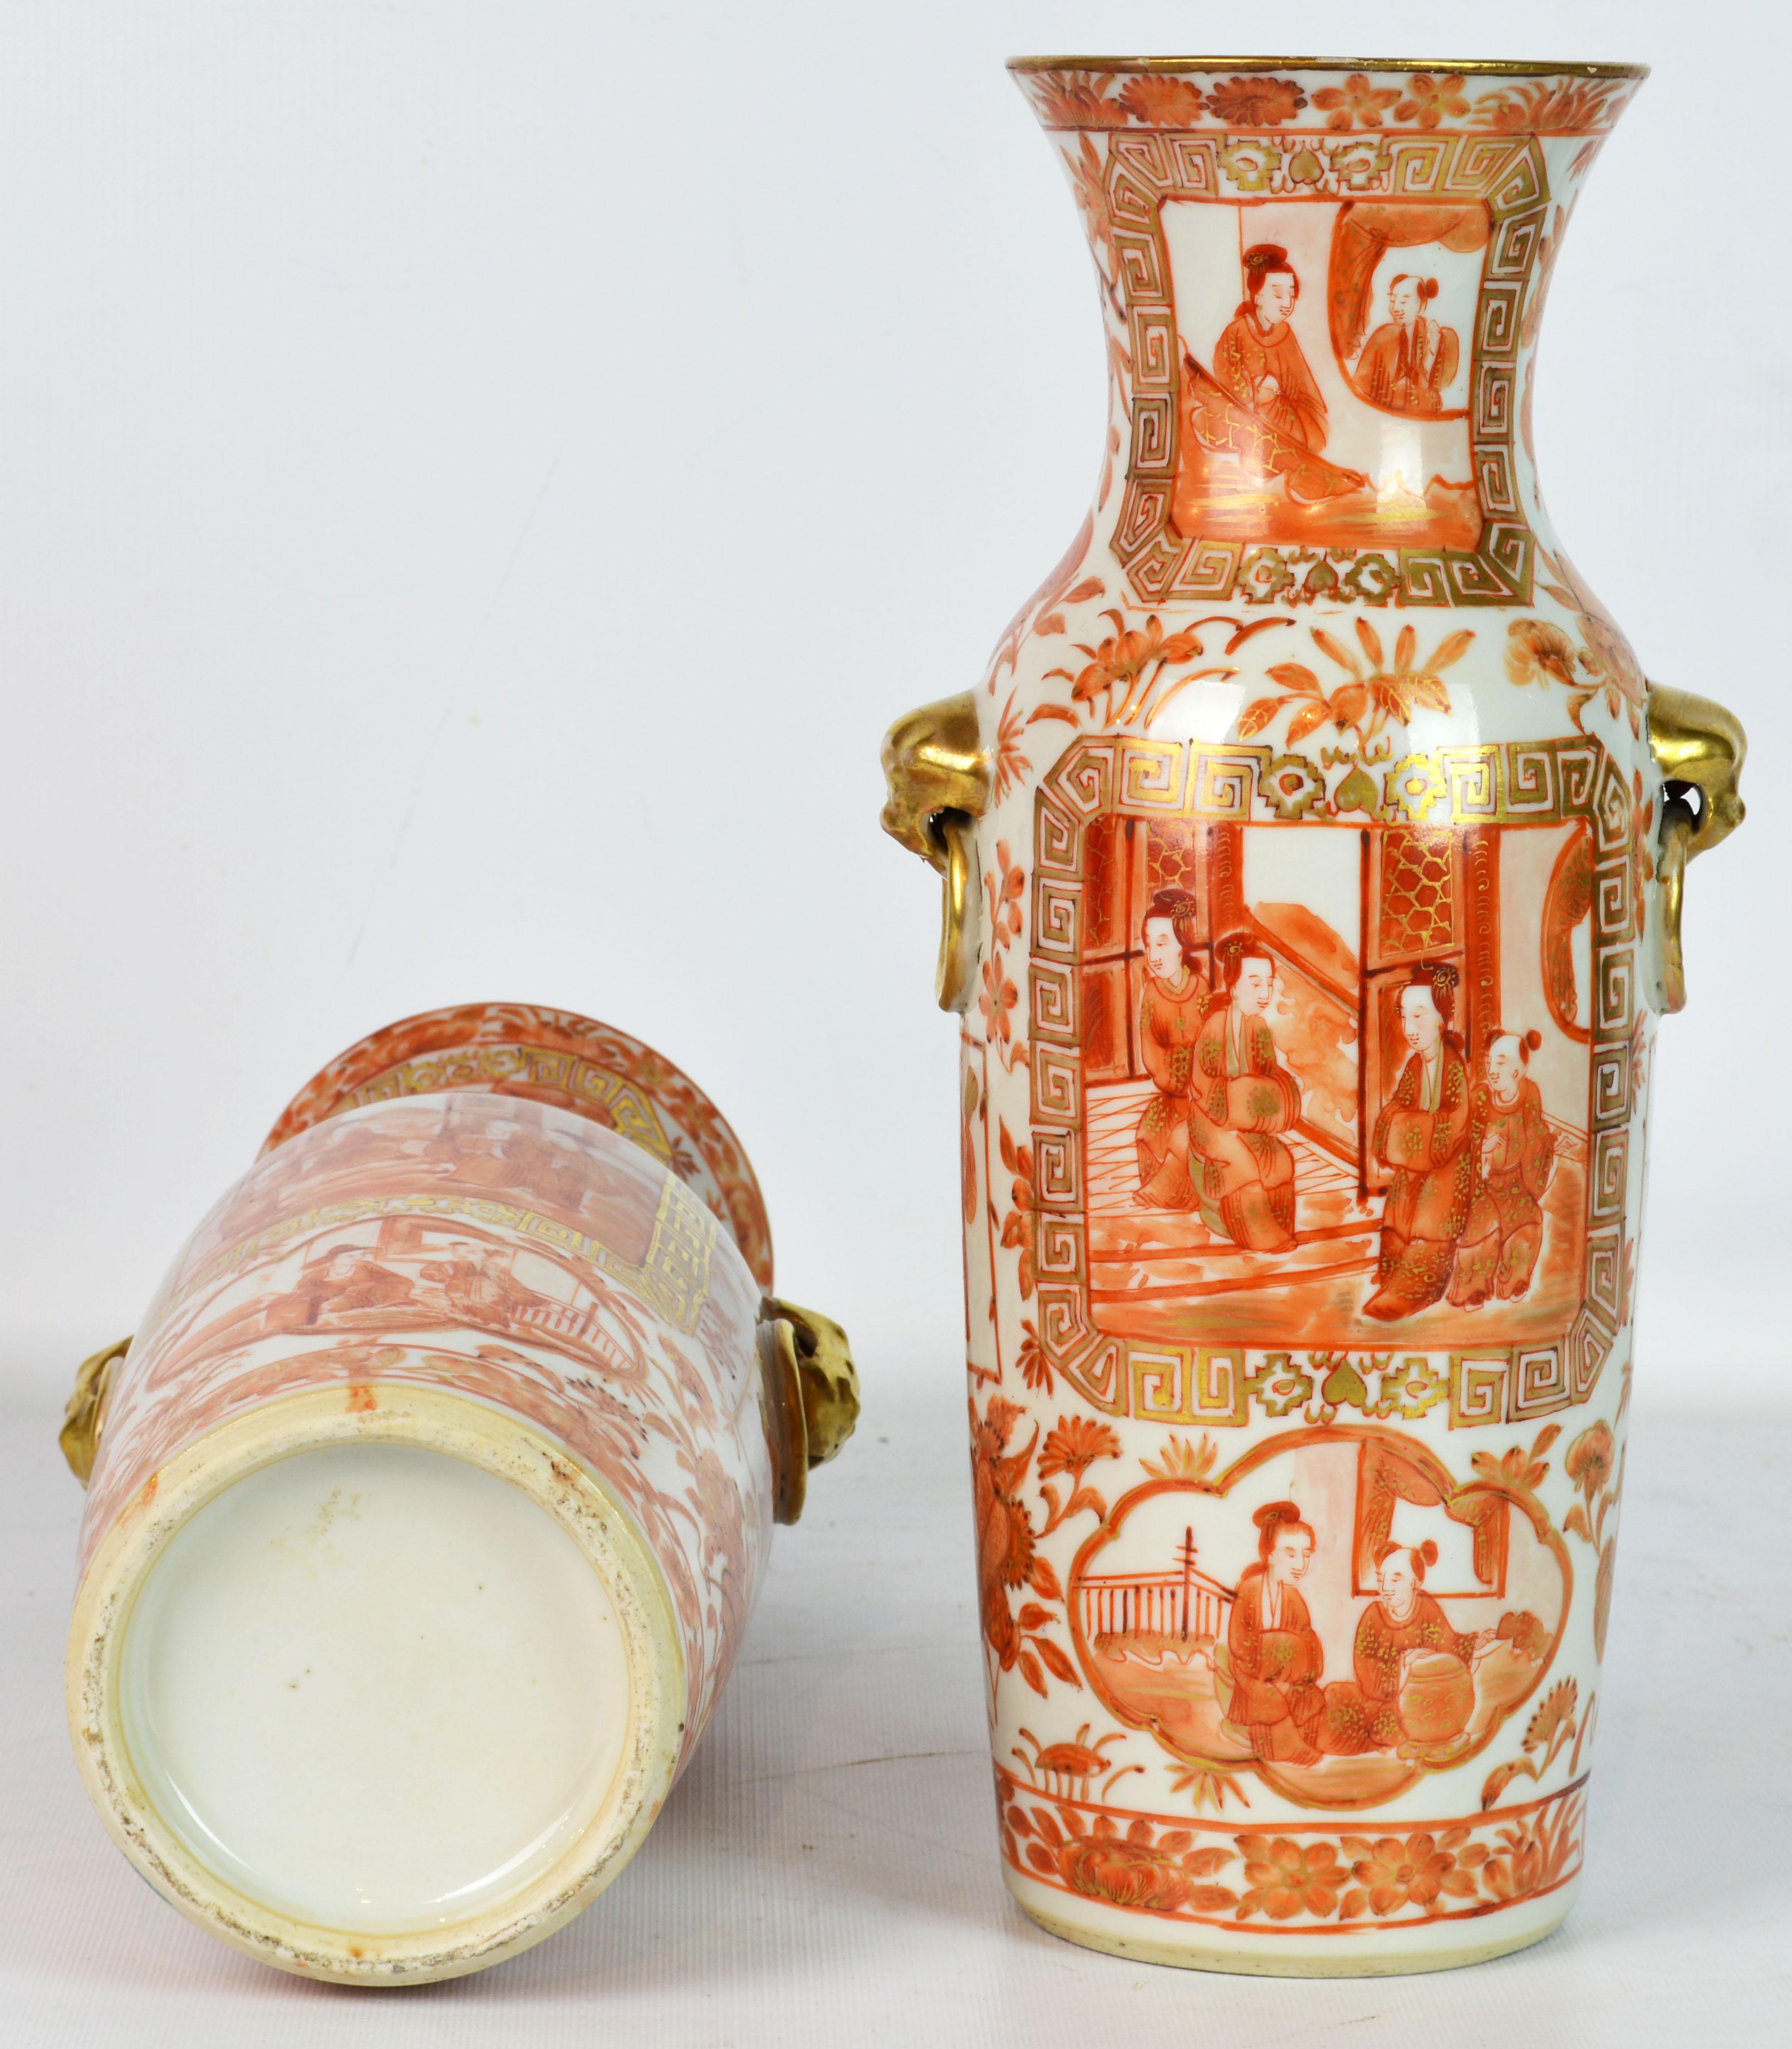 Seltene orangefarbene und vergoldete chinesische Export-Daoguang-Vasen des 19. Jahrhunderts, Paar (Chinesisch)